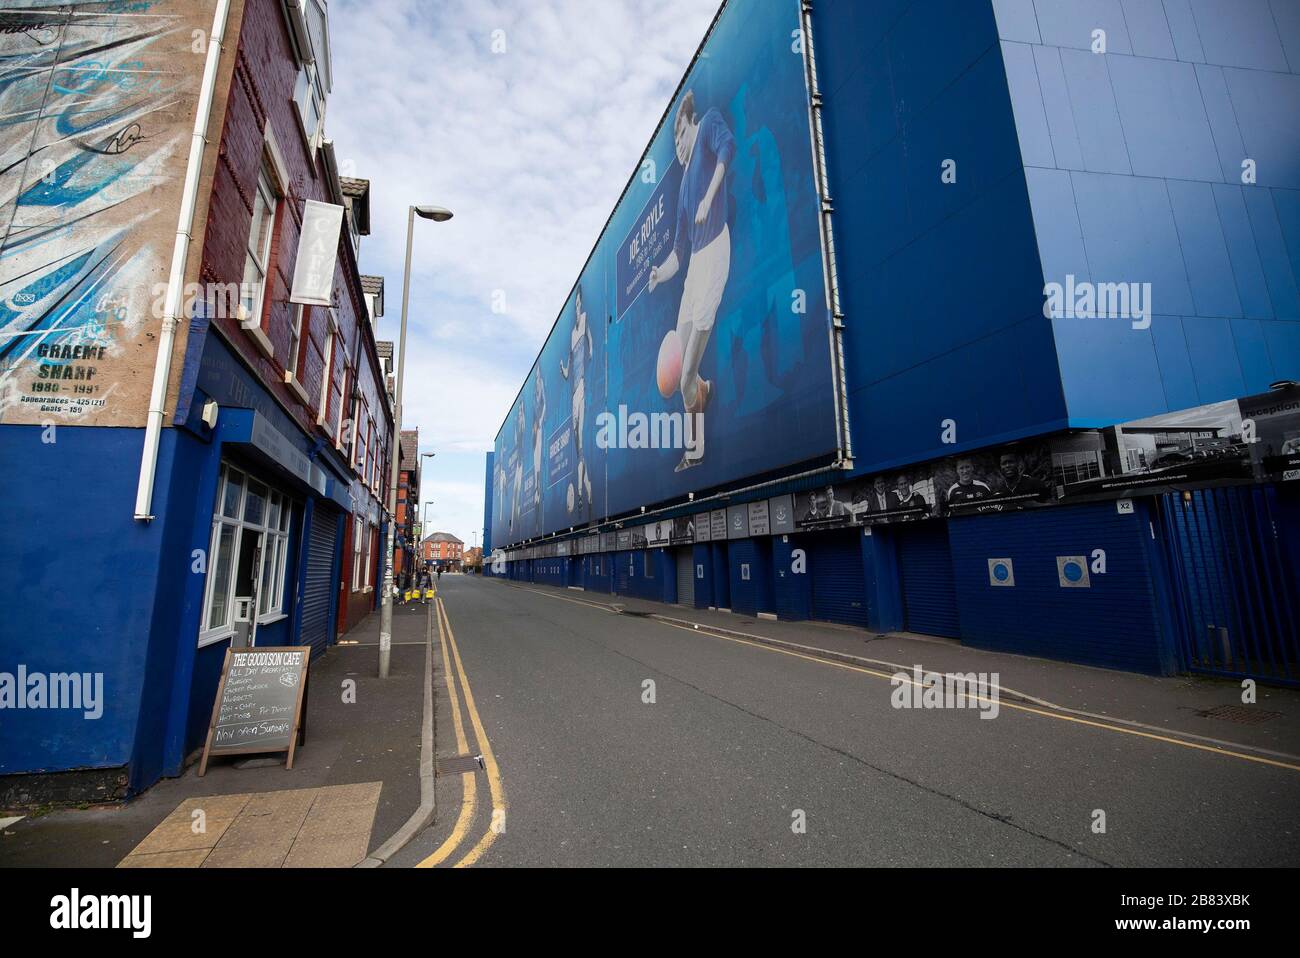 Everton Club de fútbol y los negocios circundantes durante el brote de Coronavirus Foto de stock